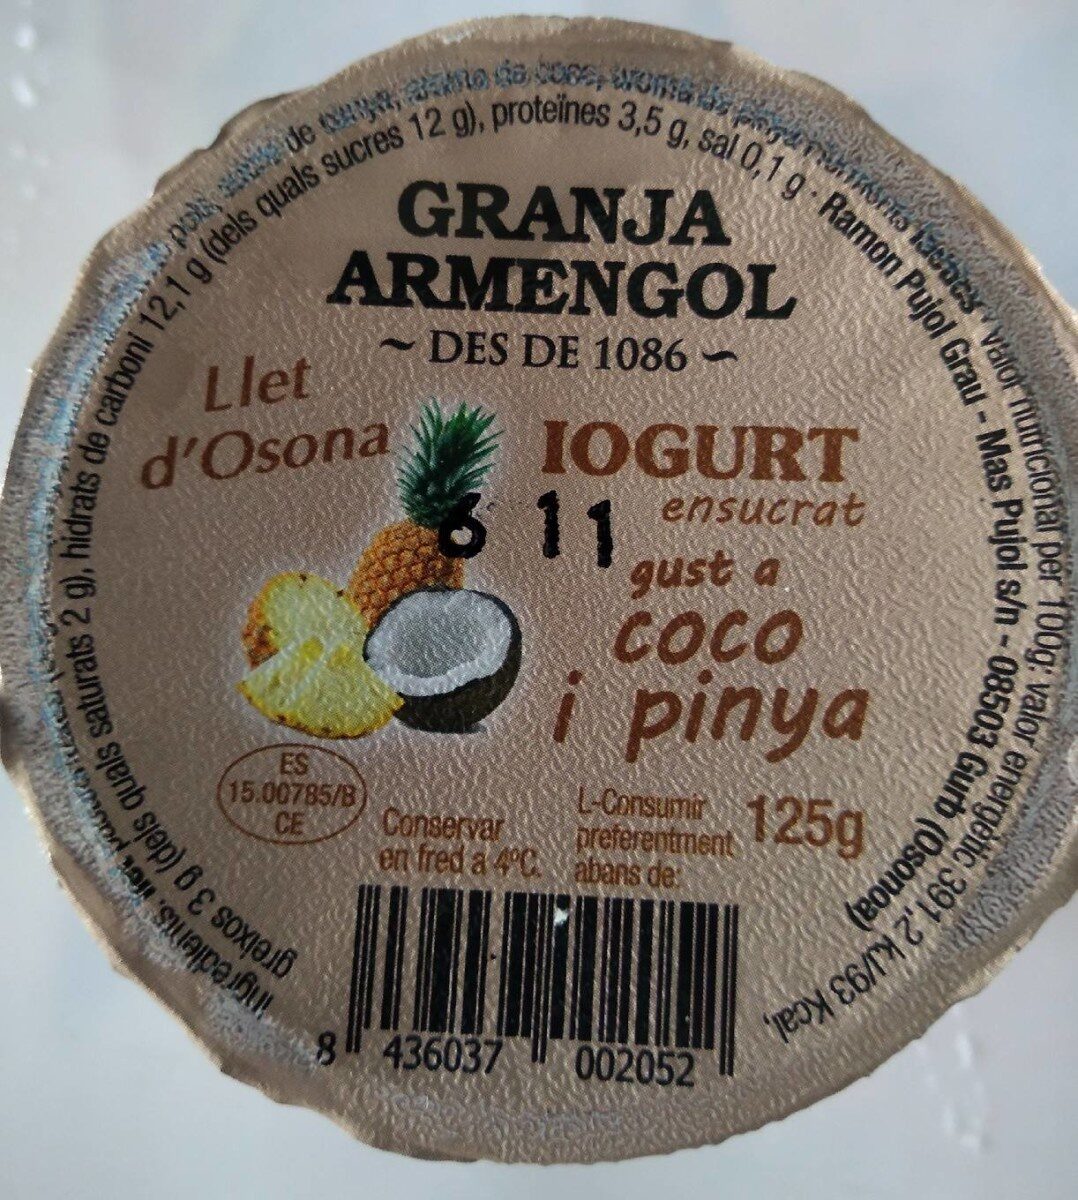 Iogurt Coco Pinya - Produktua - es